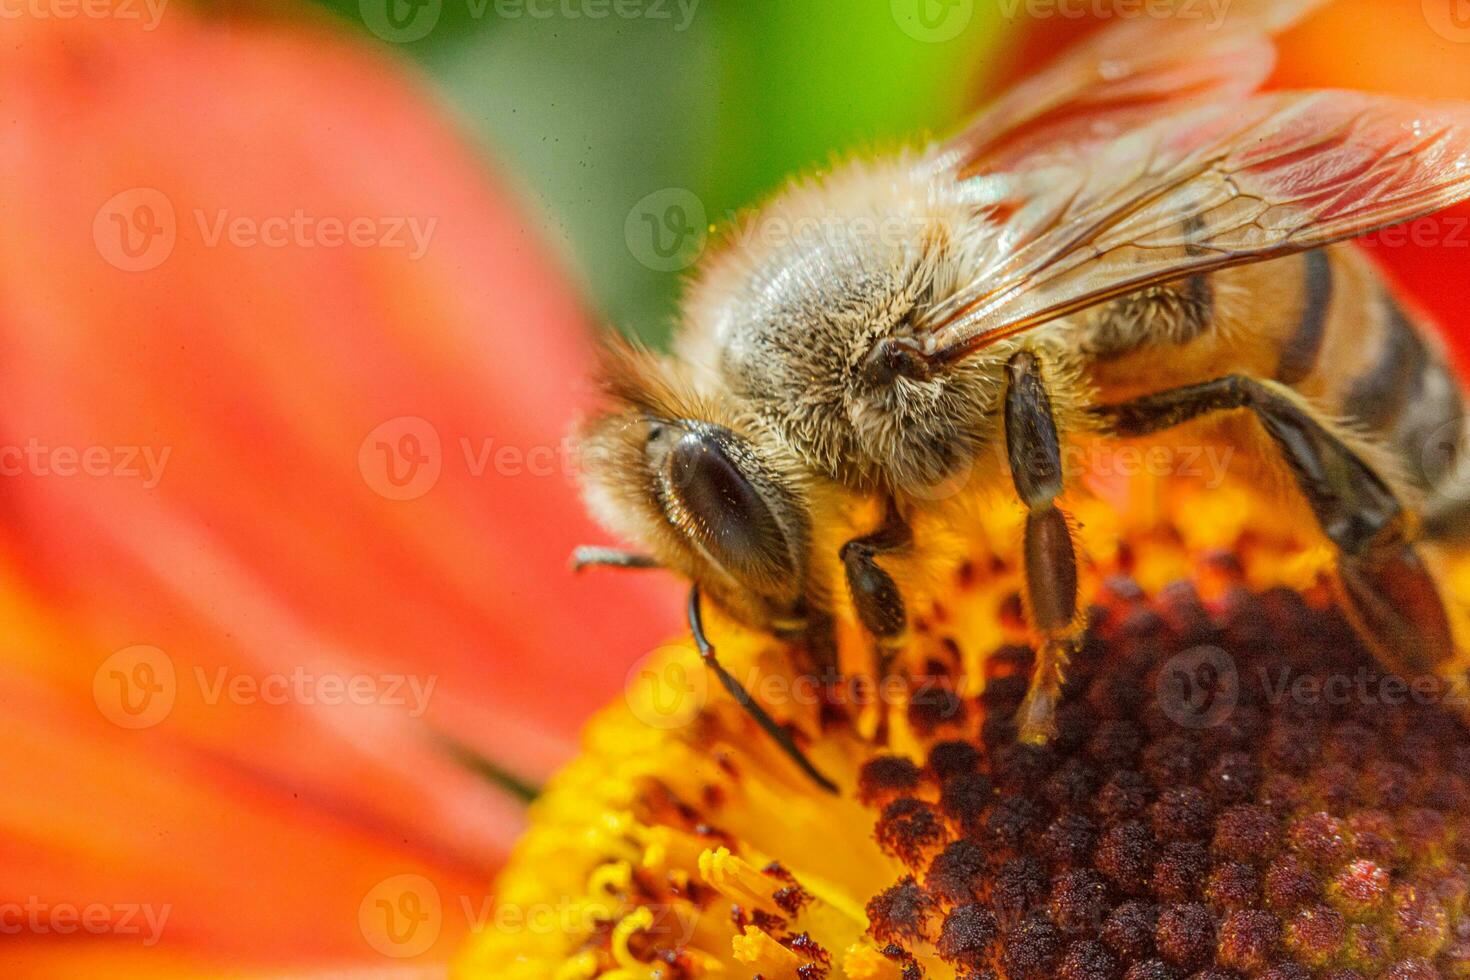 honigbiene, die mit gelbem pollen bedeckt ist, trinkt nektar und bestäubt orangenblüten. inspirierender natürlicher Blumenfrühling oder blühender Gartenhintergrund des Sommers. Leben der Insekten. Makro Nahaufnahme selektiver Fokus. foto